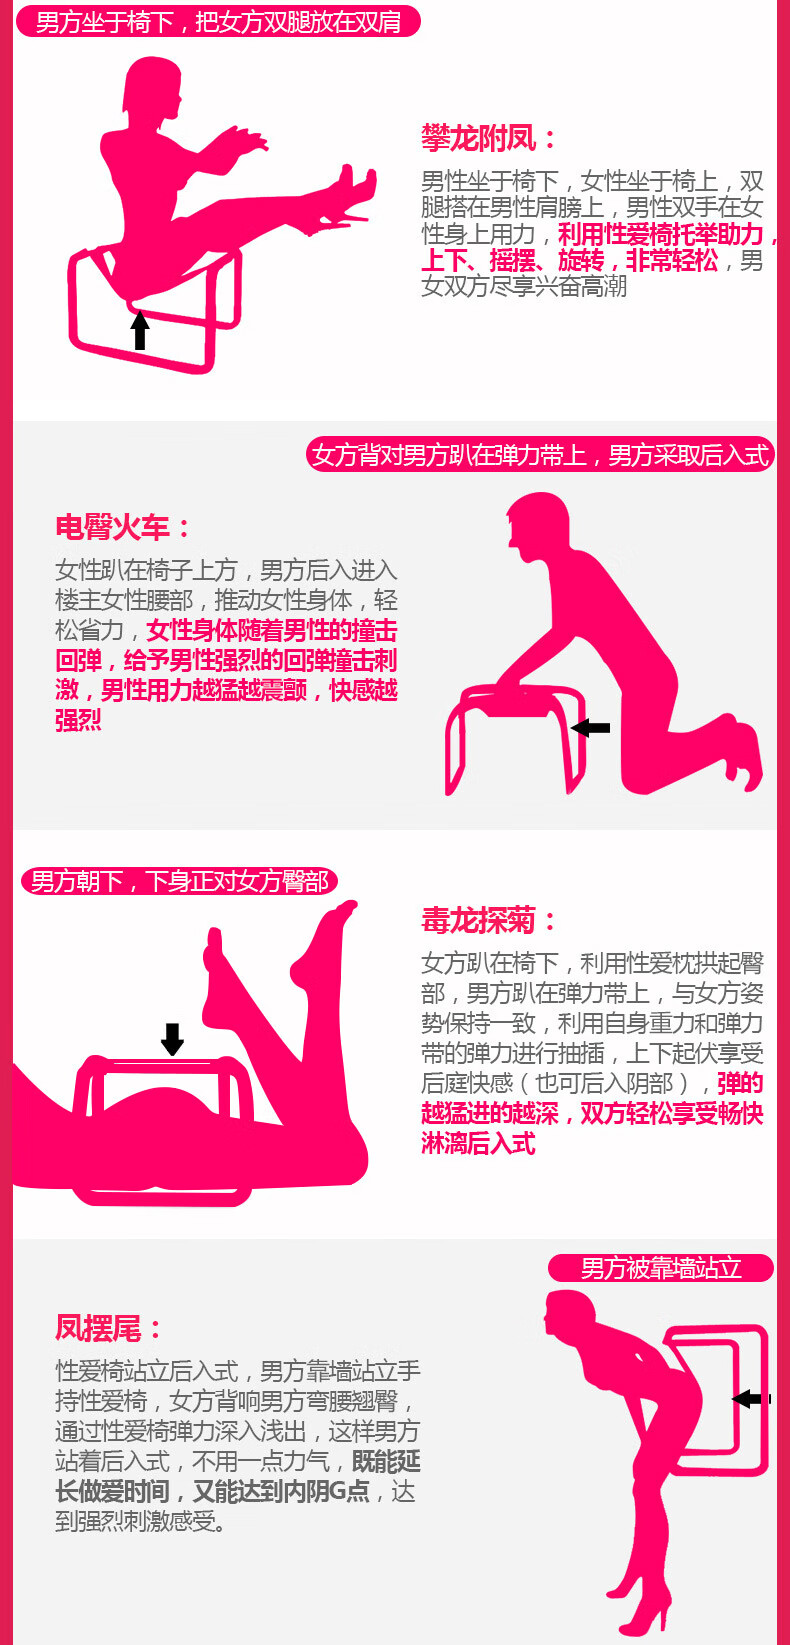 欢乐椅的十种用法图片